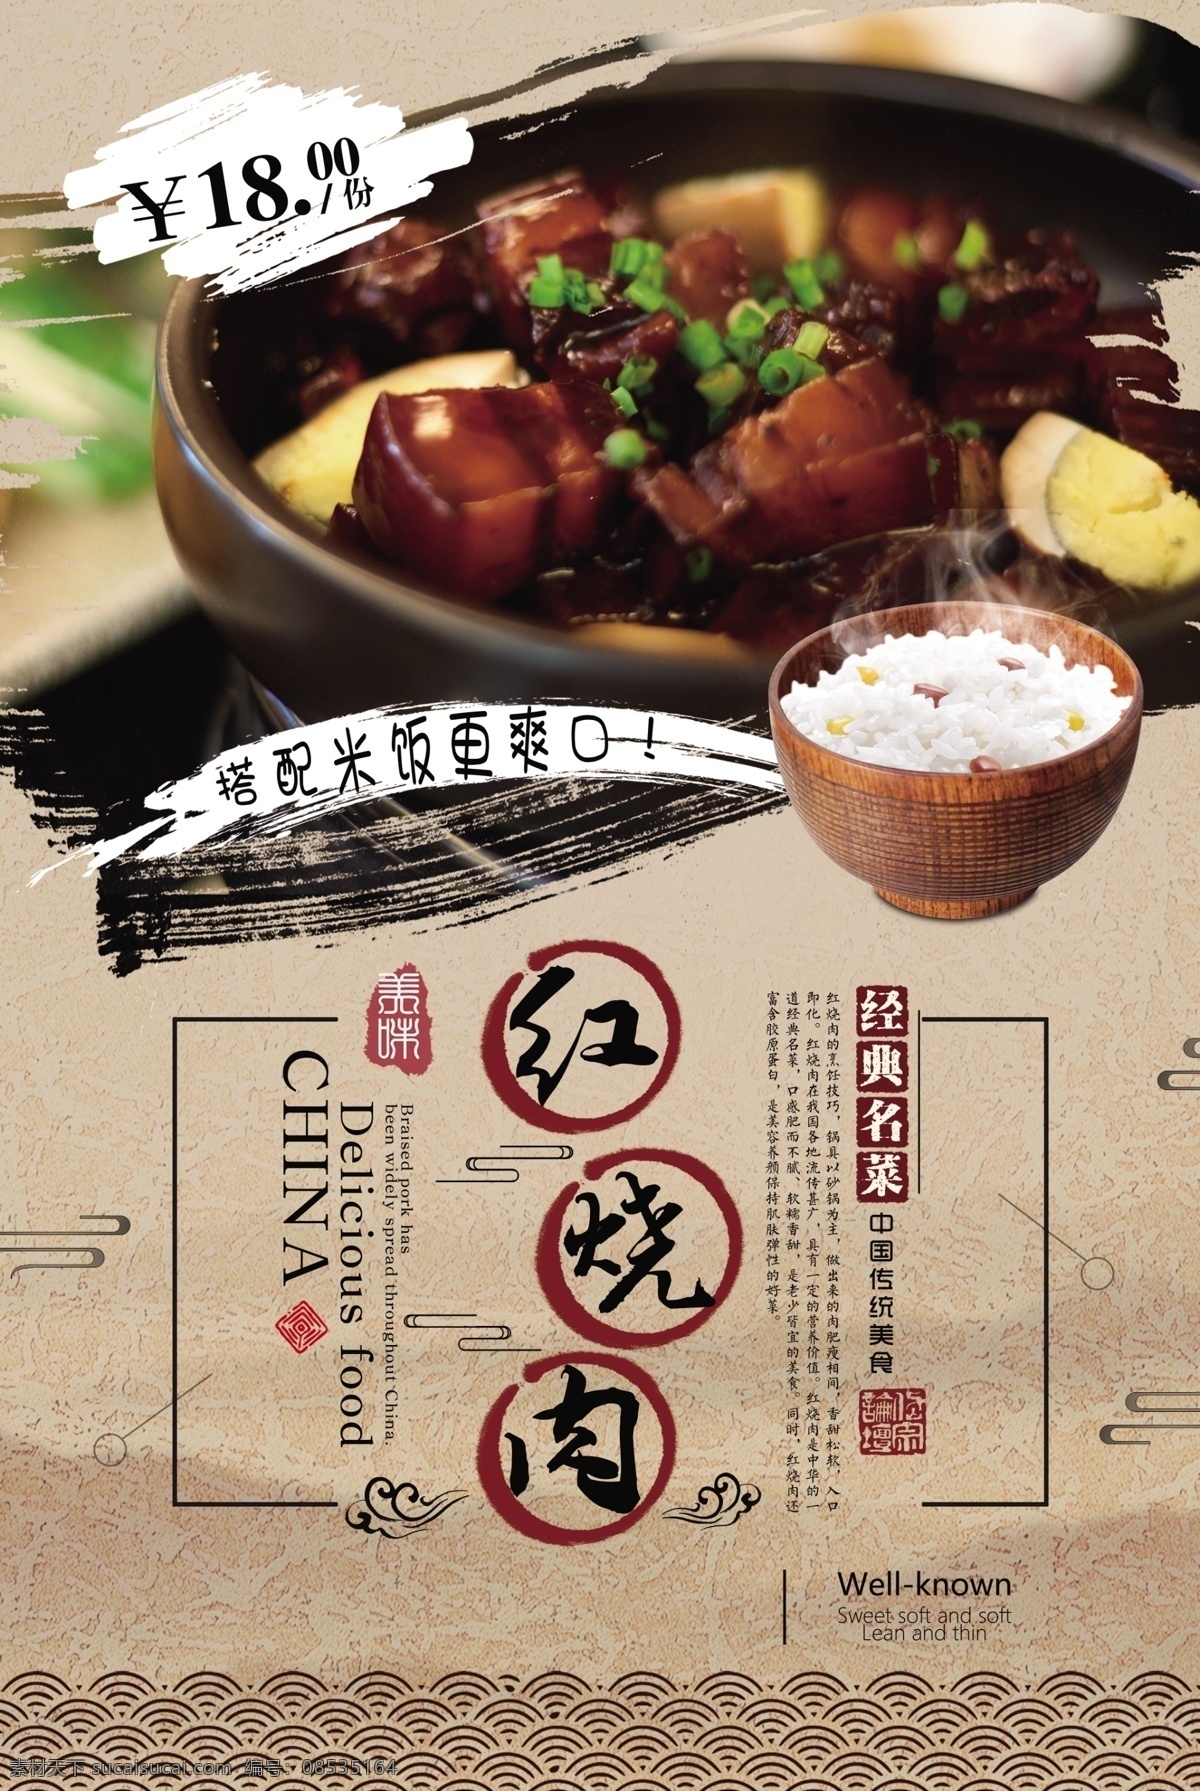 红烧肉 美食 活动 宣传海报 素材图片 宣传 海报 餐饮美食 类